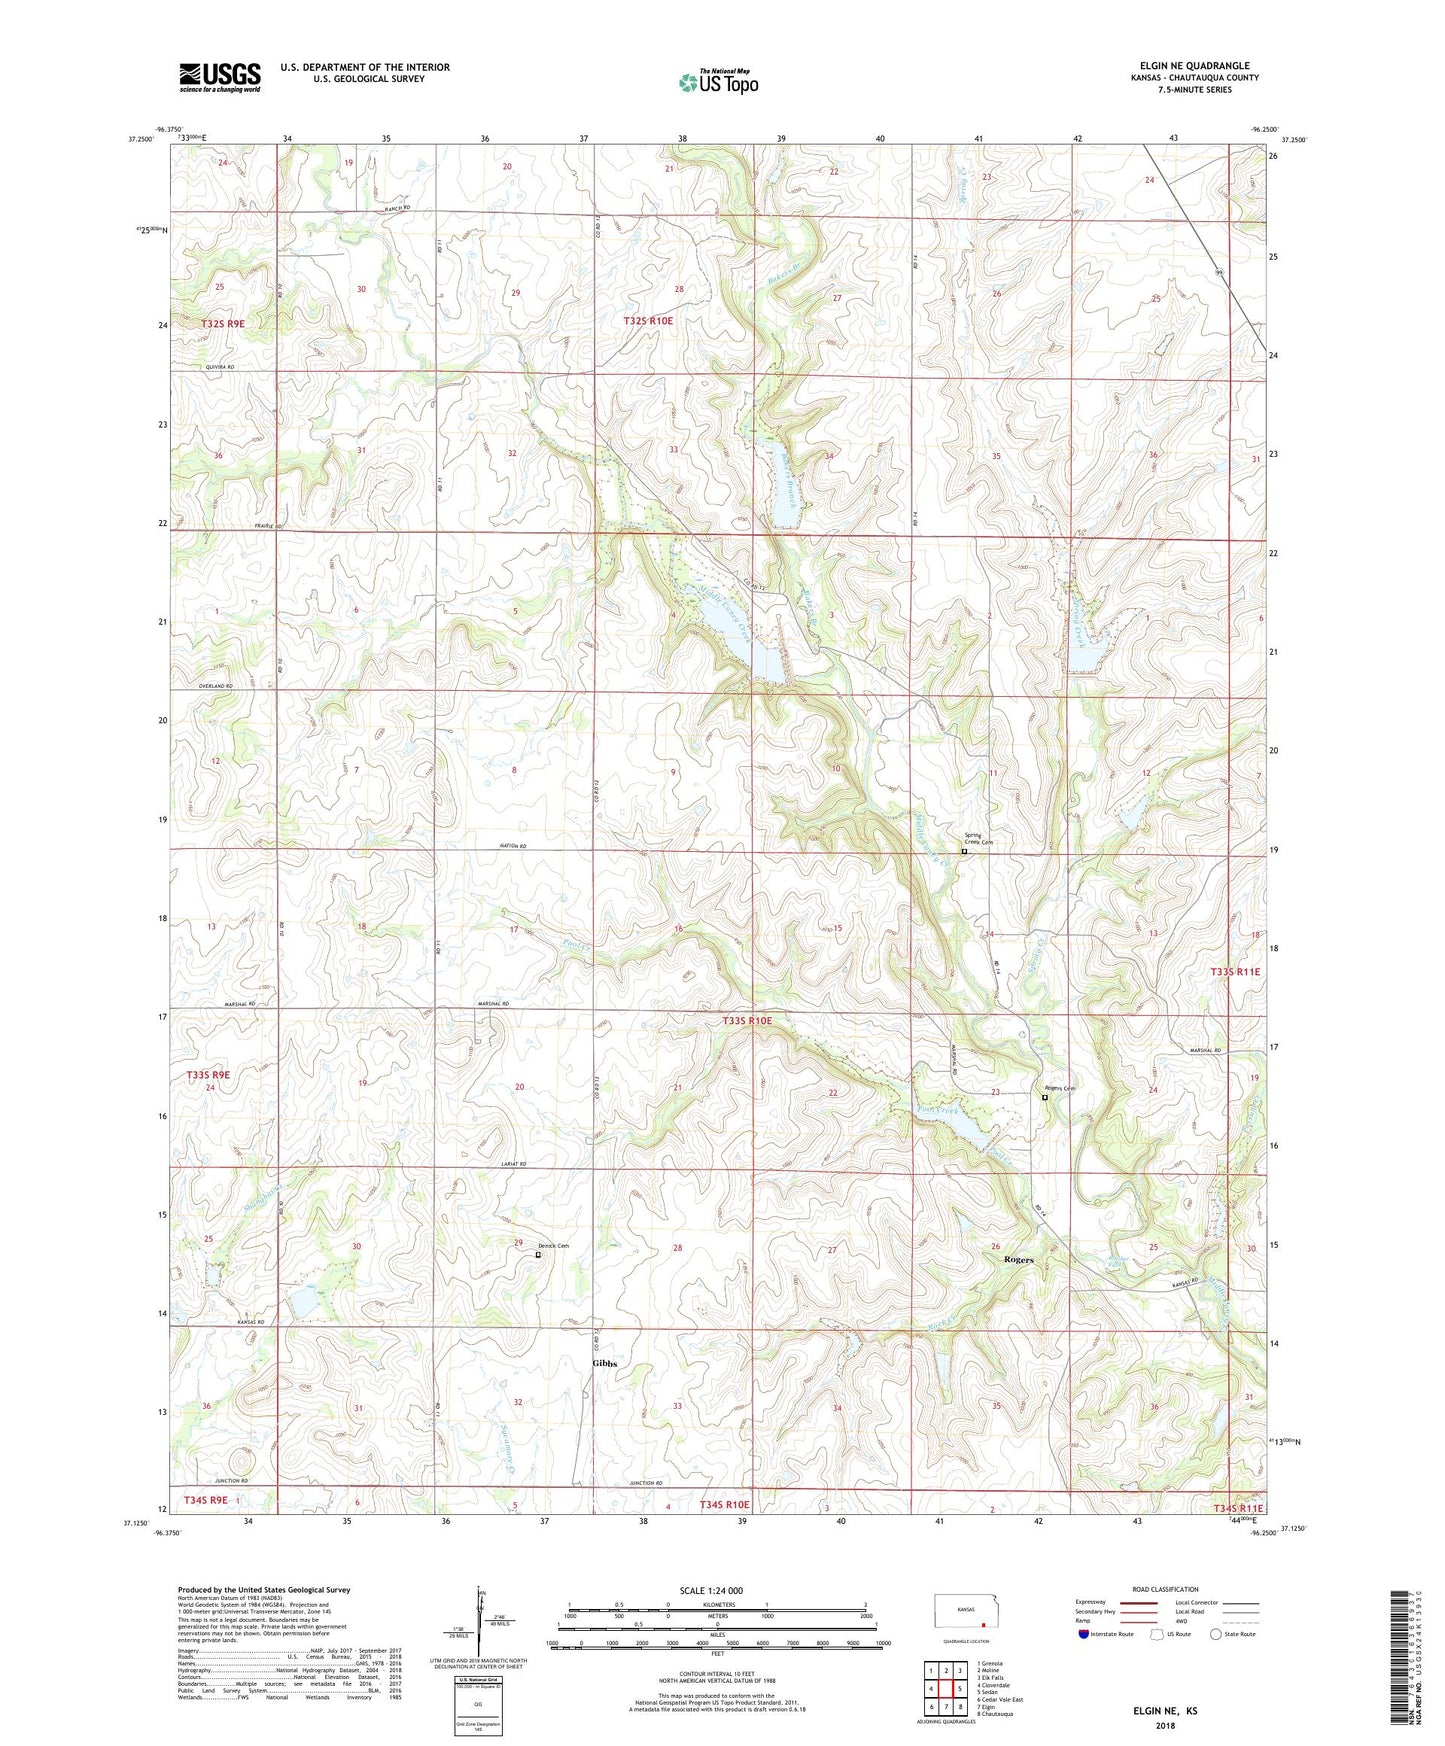 Elgin NE Kansas US Topo Map Image